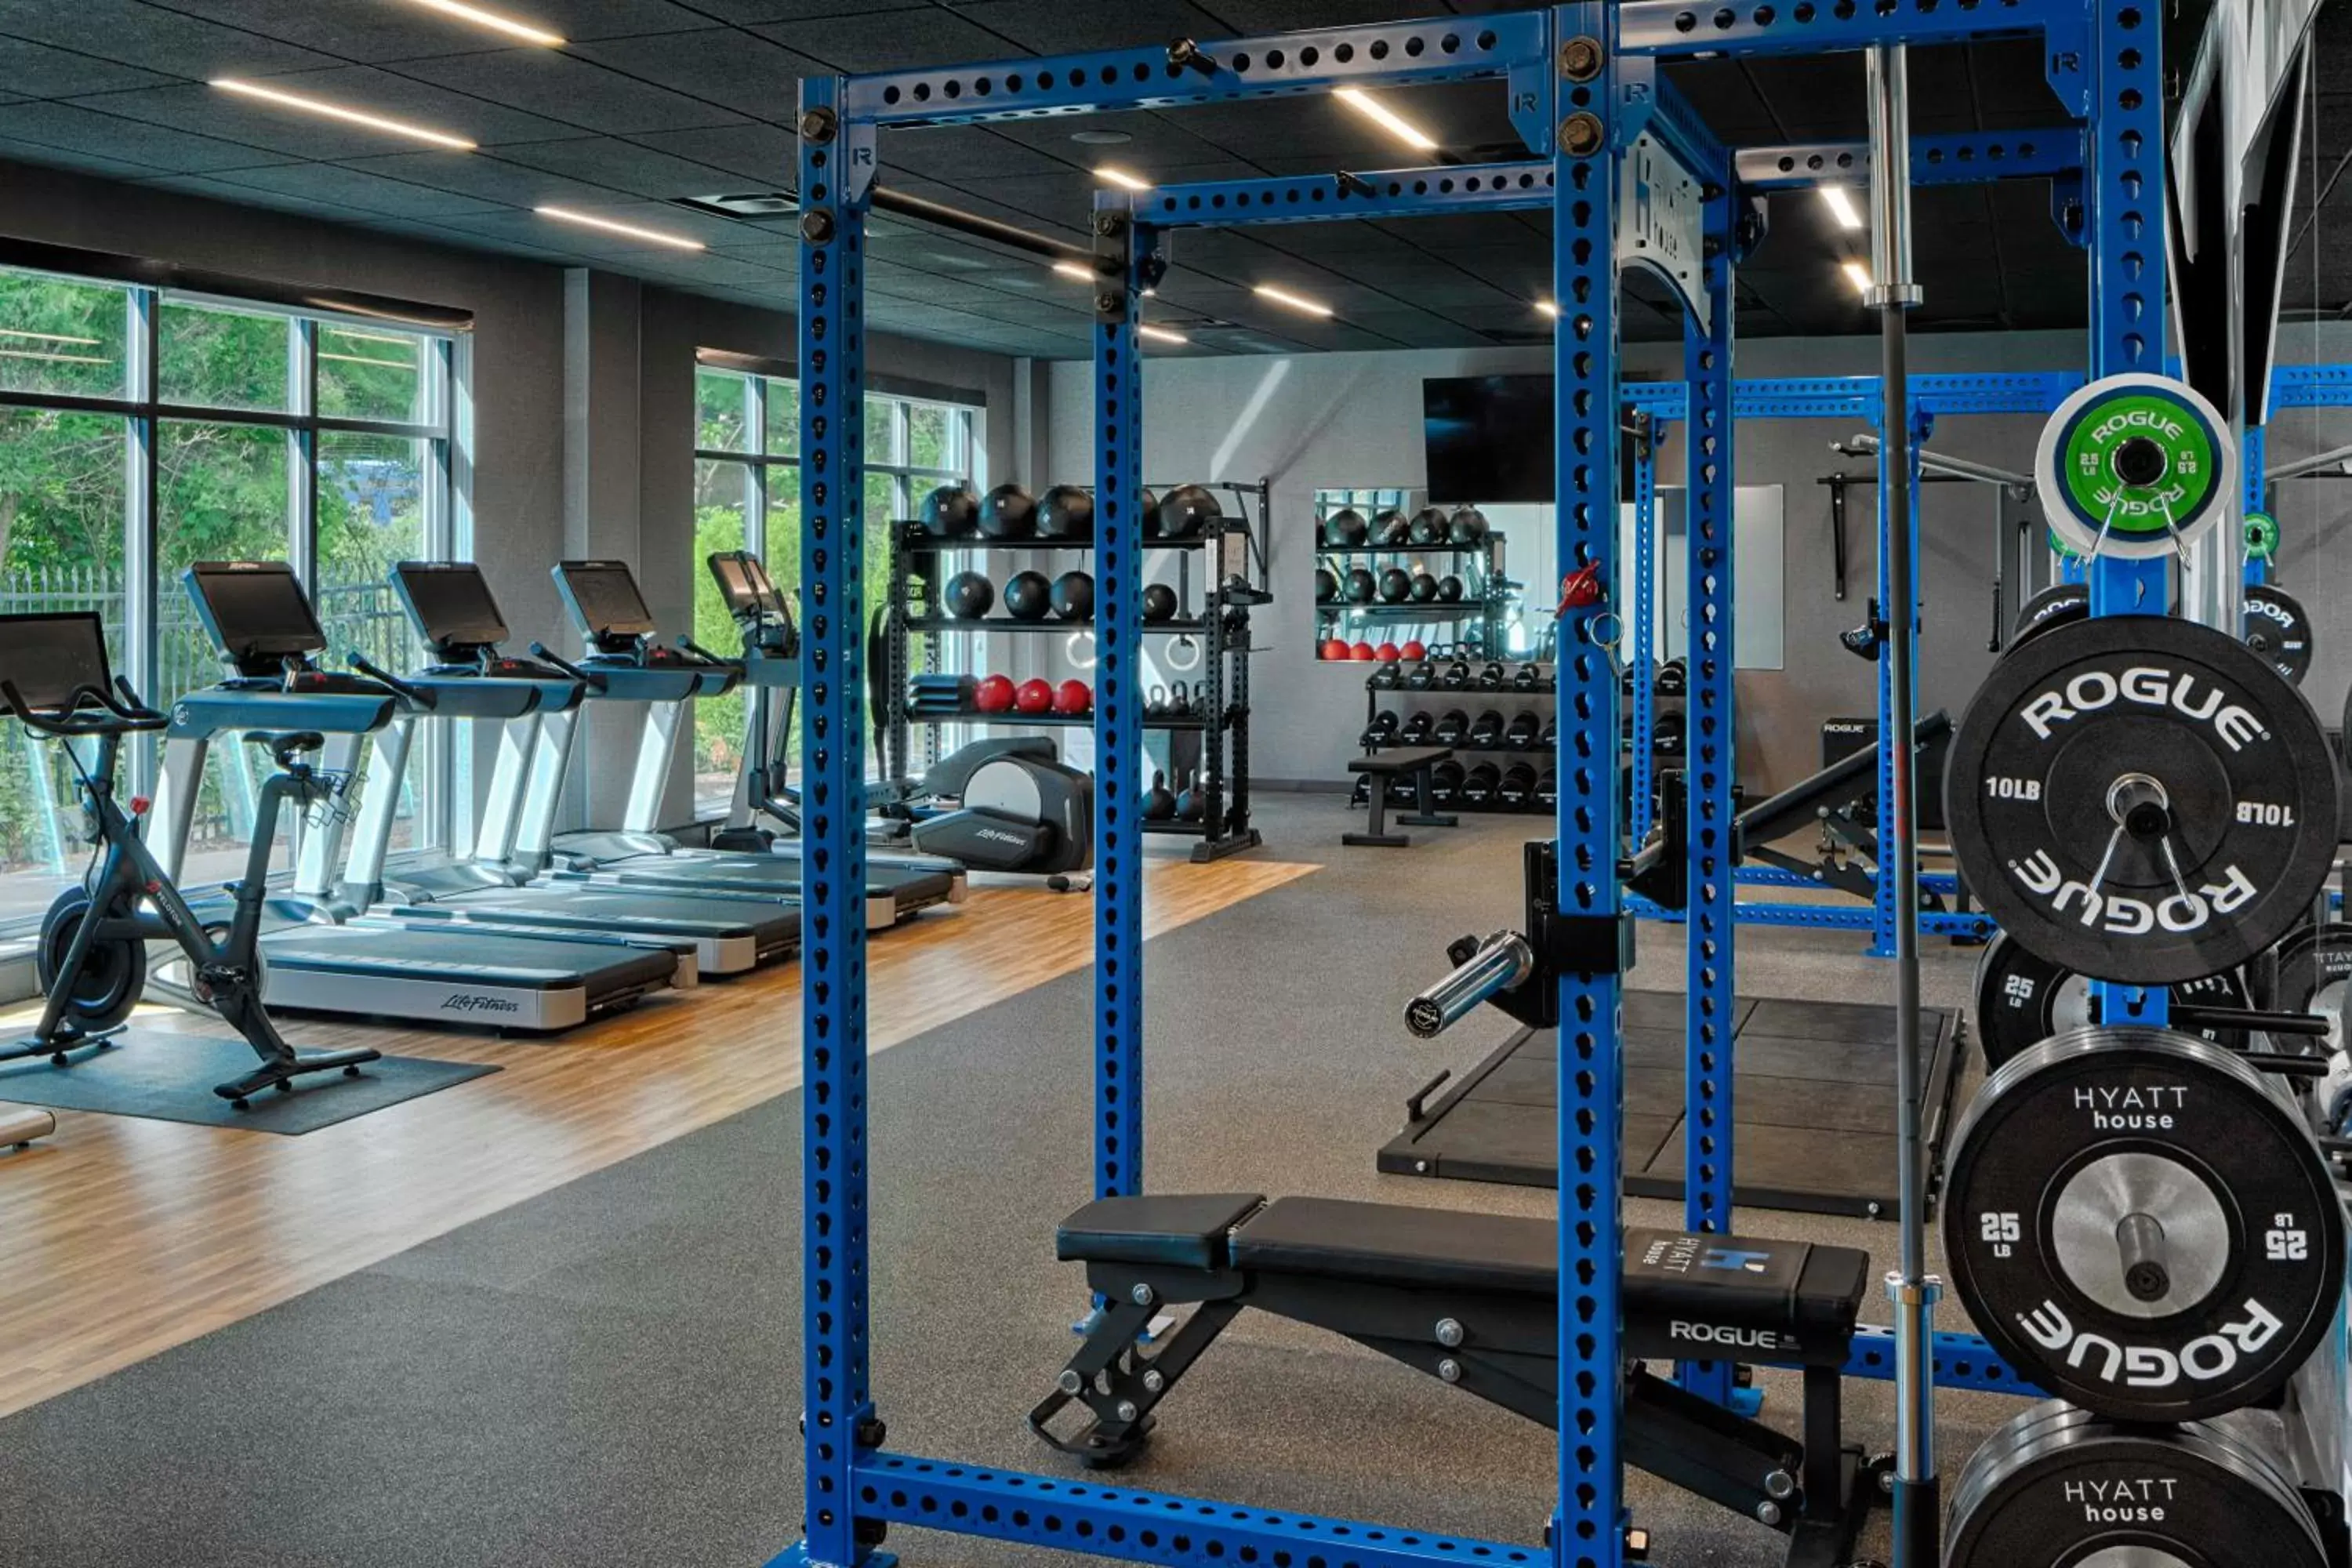 Fitness centre/facilities, Fitness Center/Facilities in Hyatt House Columbus OSU Short North